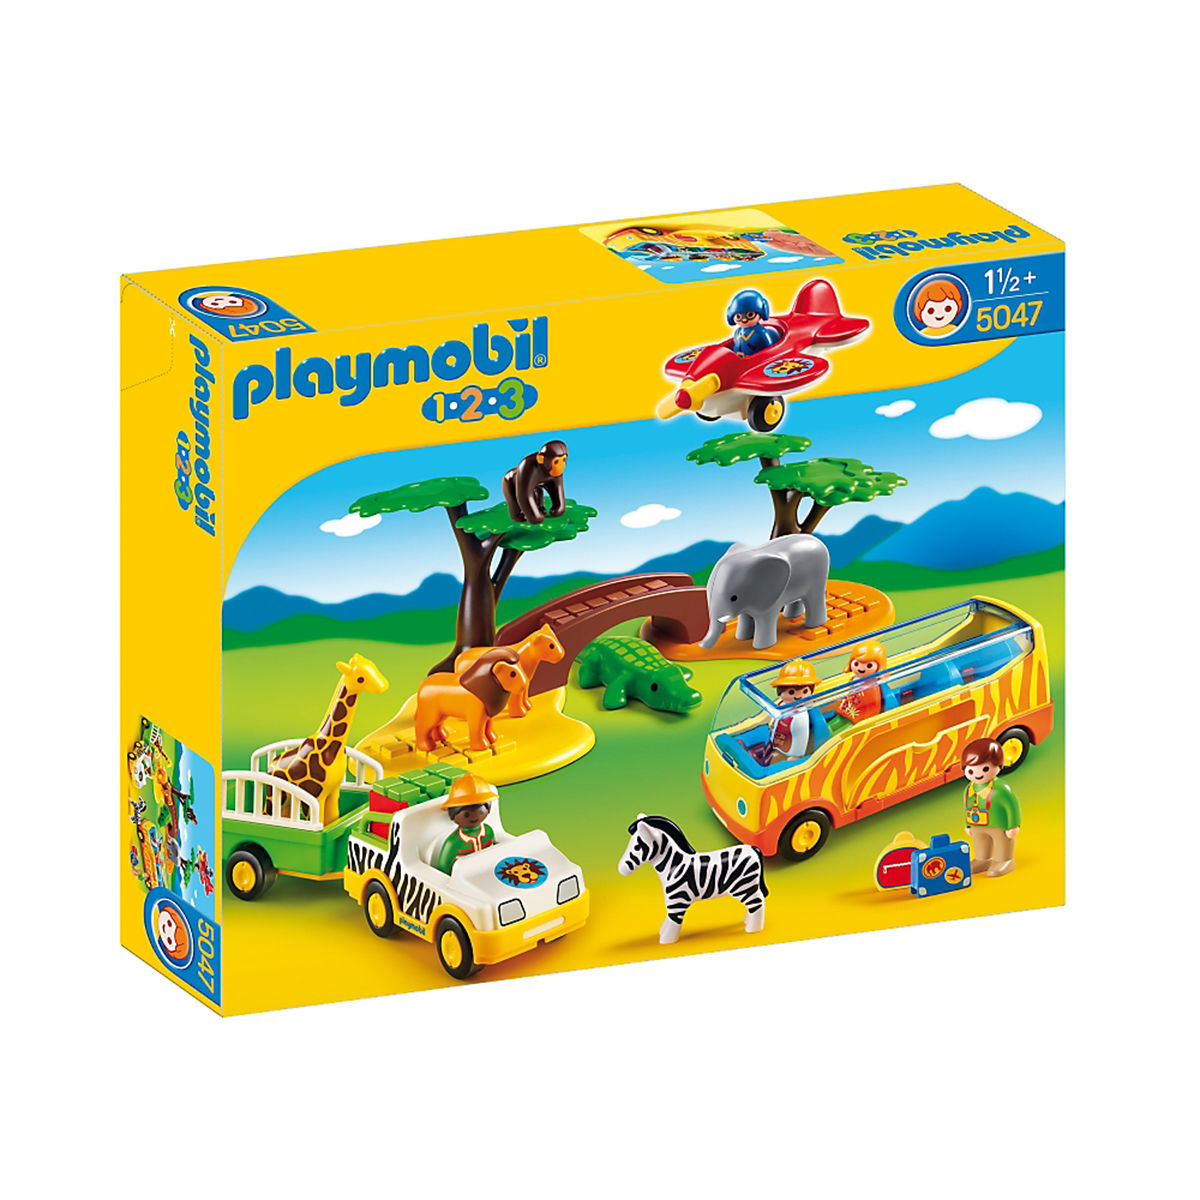 Playmobil choisit WeMoms pour communiquer sur sa nouvelle gamme Playmobil 123